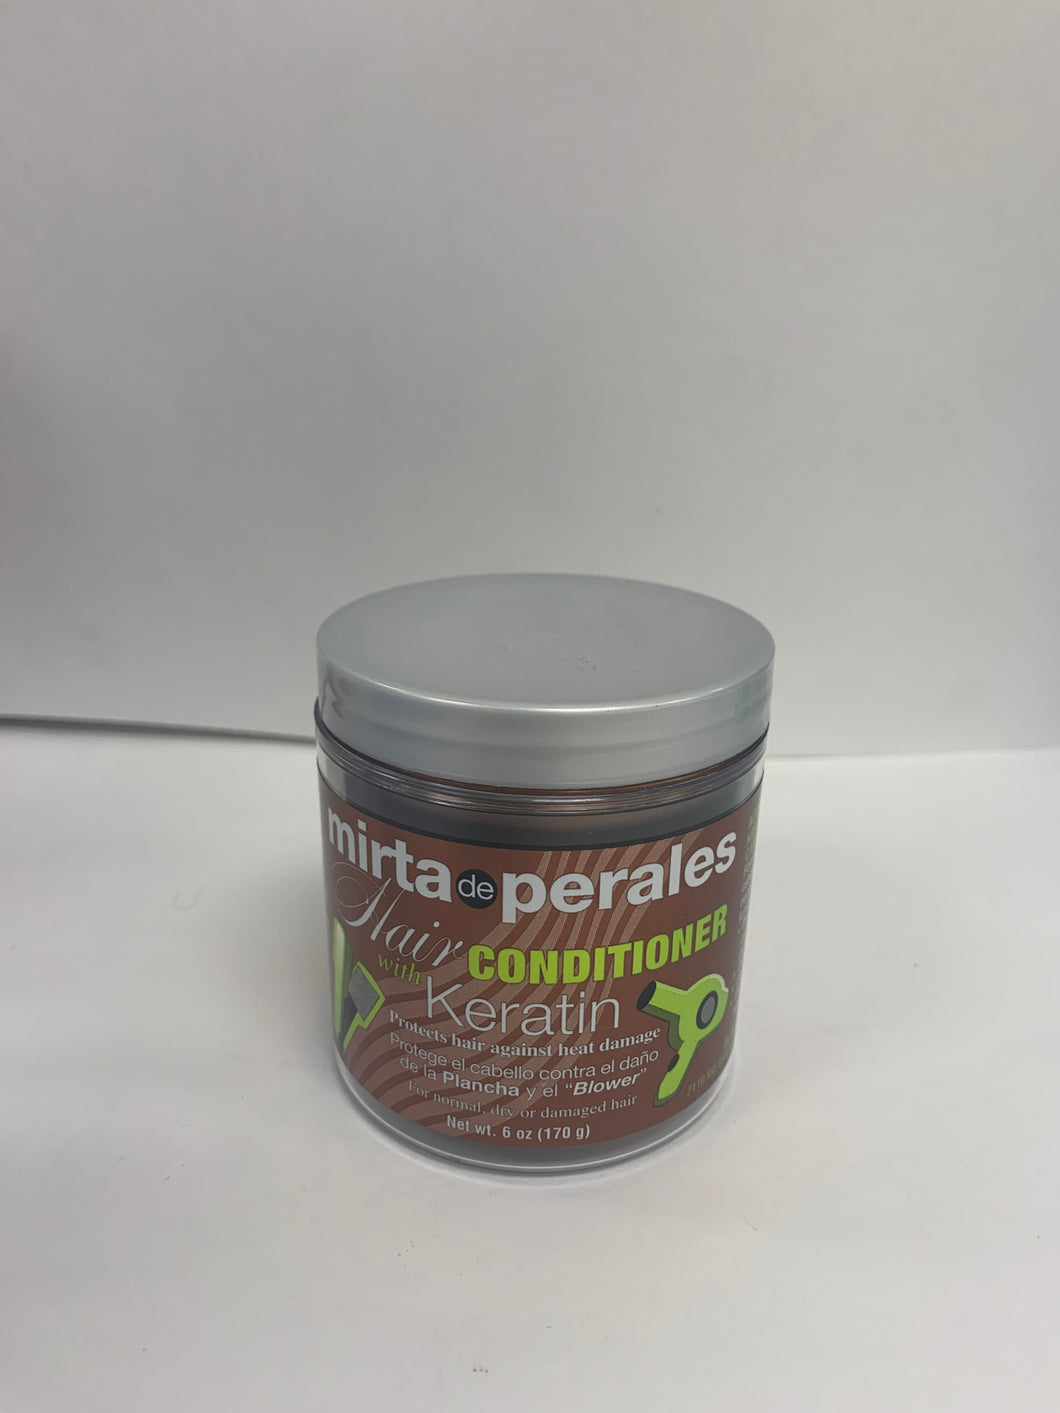 Mitra-De-Perales Hair Conditioner With Keratin